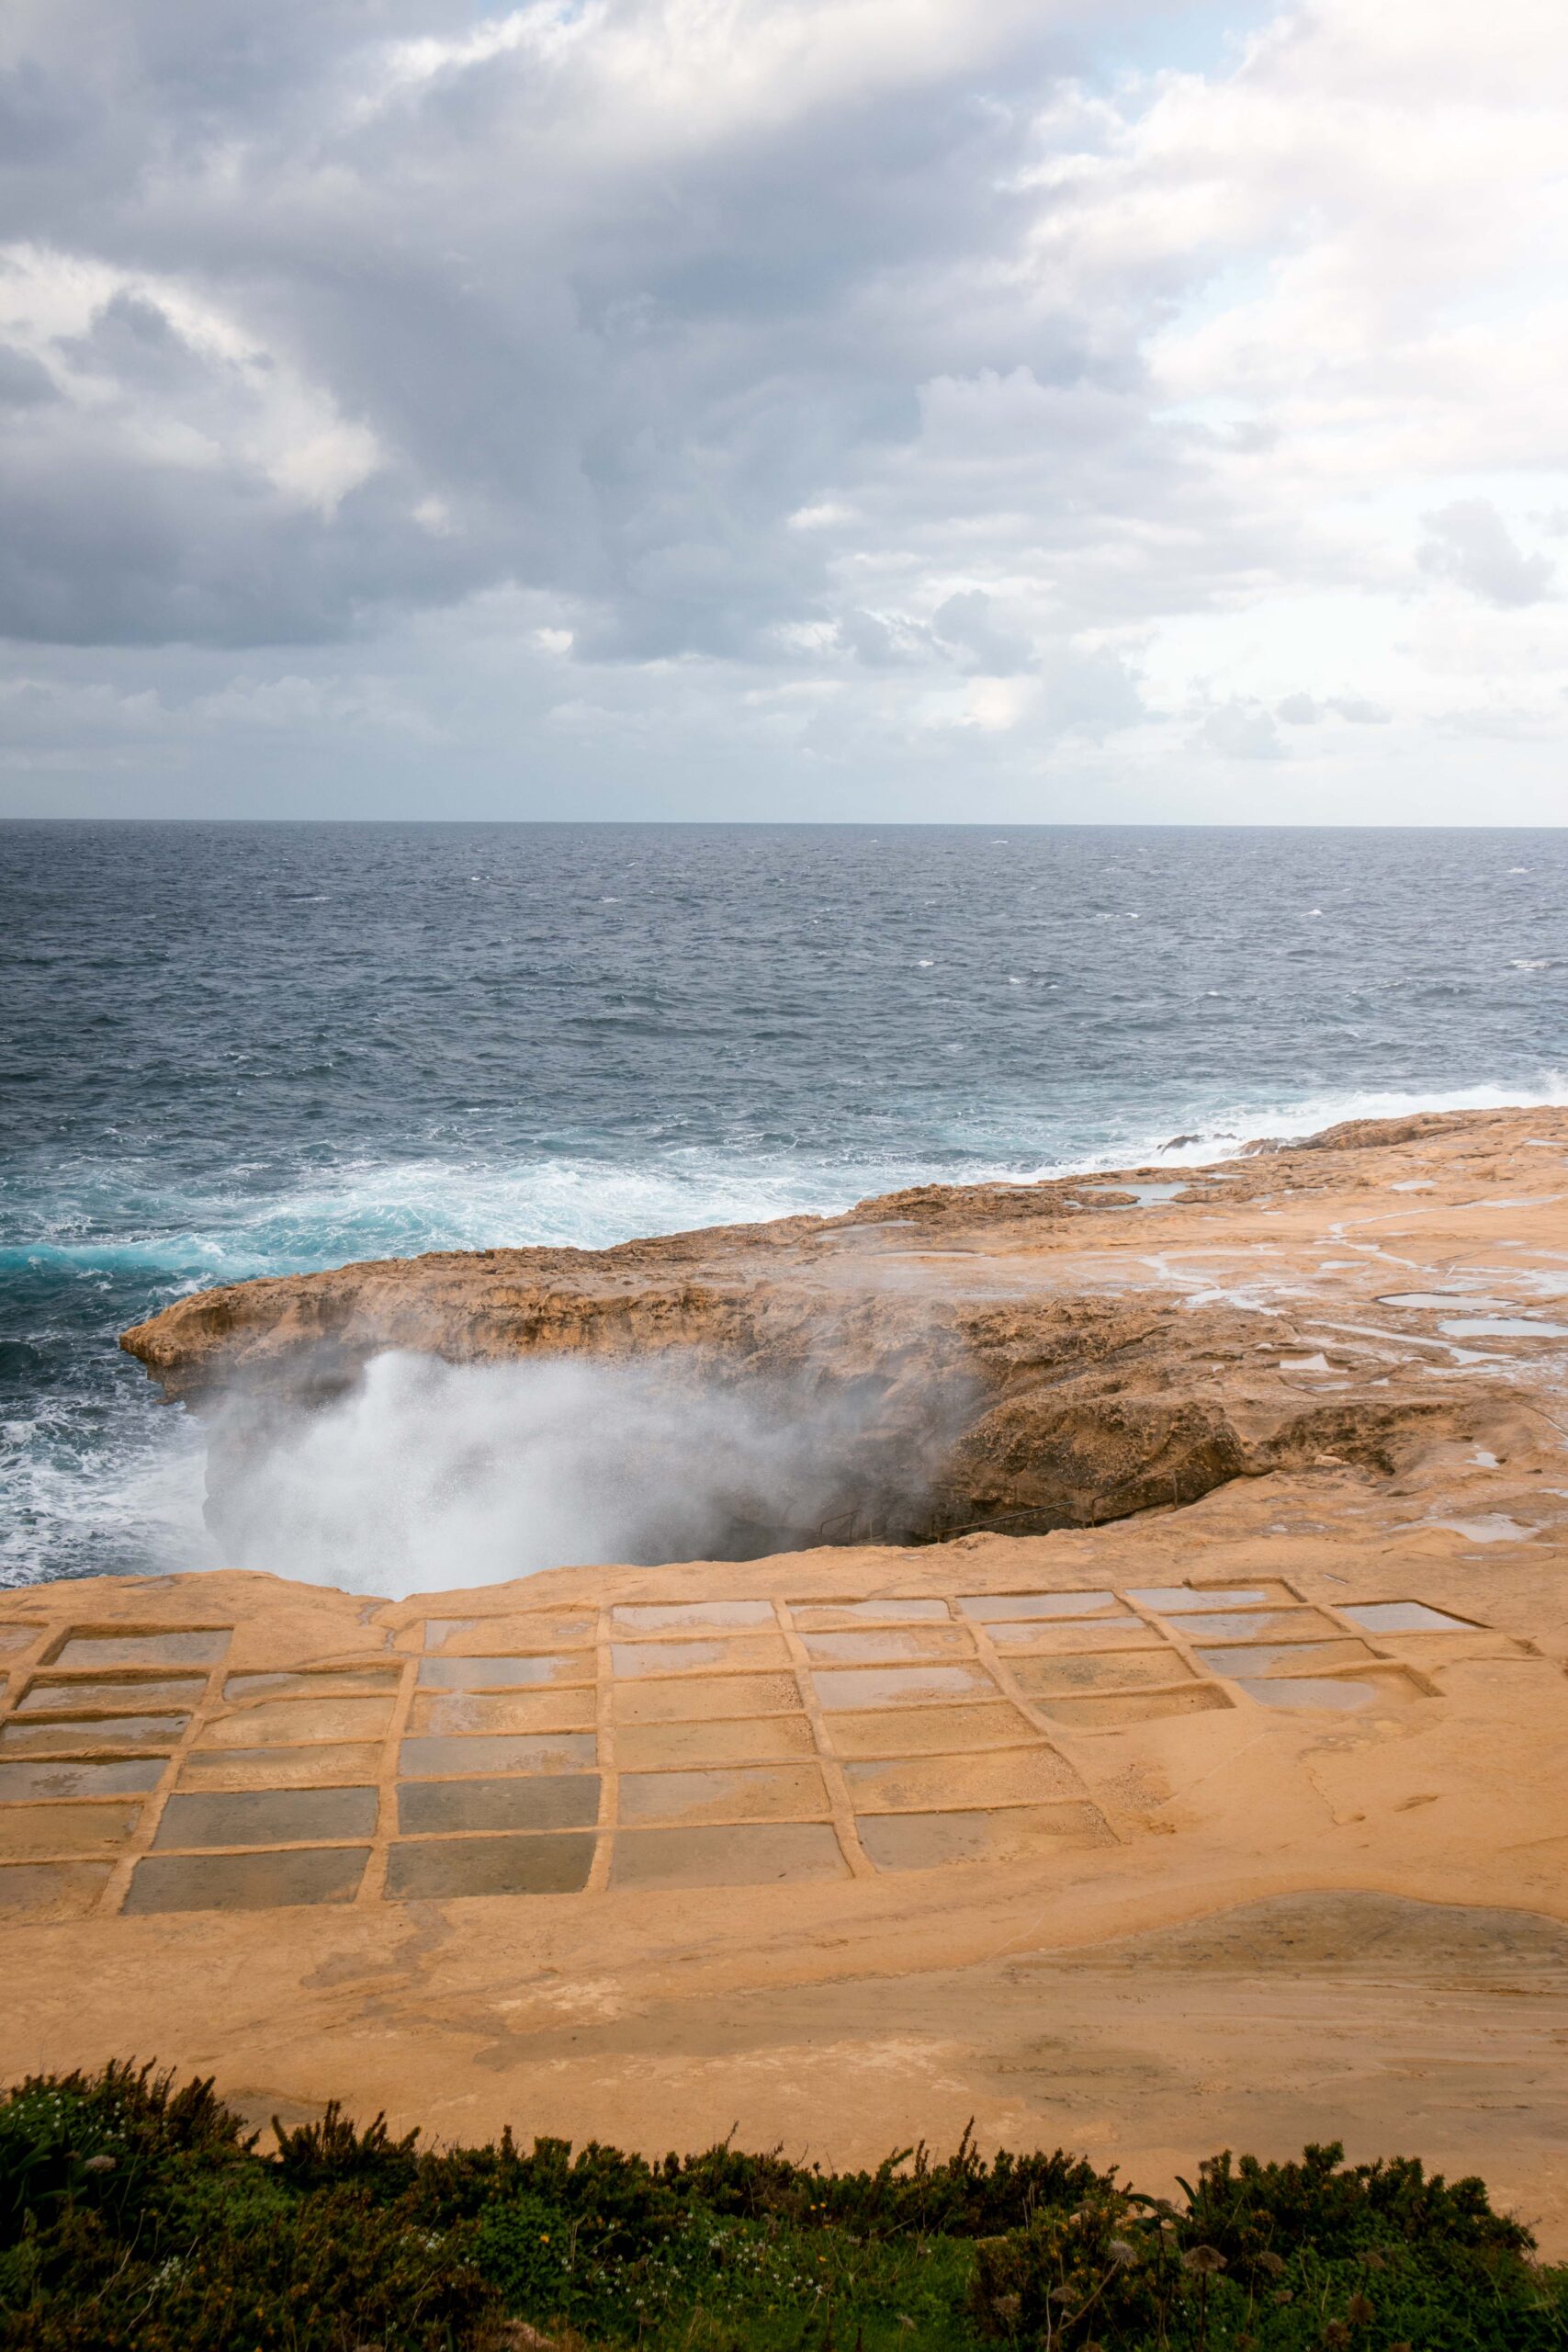 Crashing waves at Xwejni Salt Pans in Gozo island, Malta